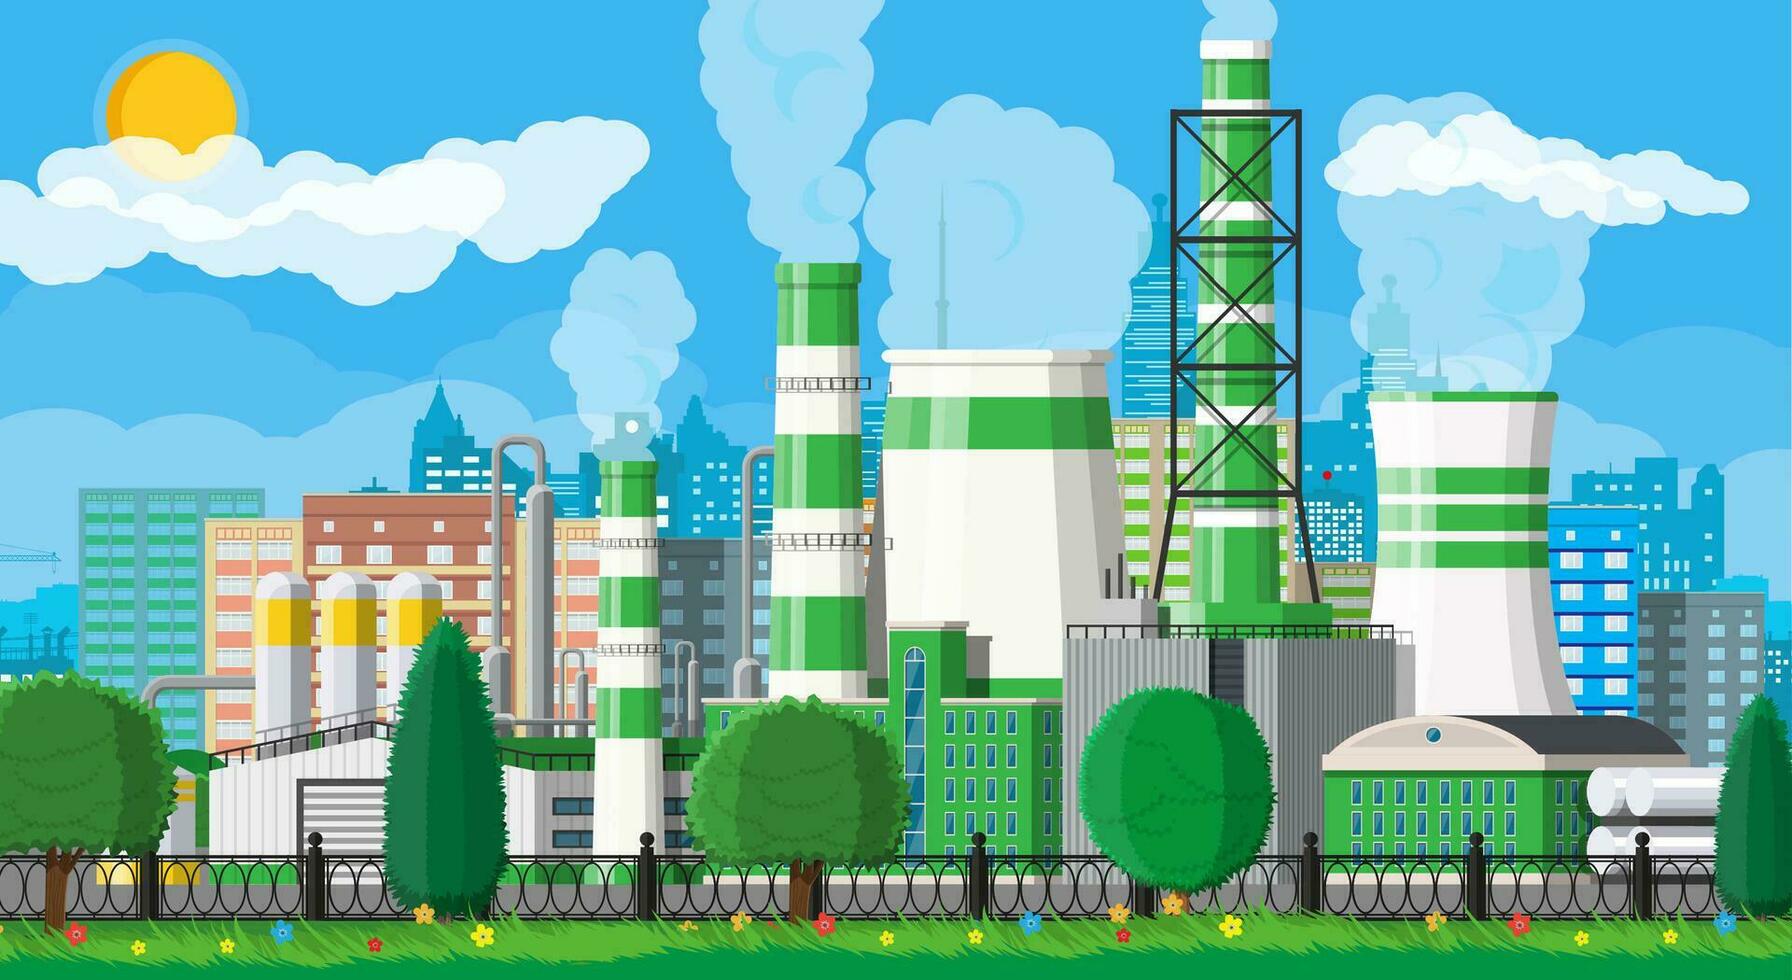 fabrik byggnad. industriell fabrik, kraft växt. rör, byggnader, lager, lagring tank. grön eco växt. urban stadsbild horisont. träd moln och Sol. vektor illustration i platt stil